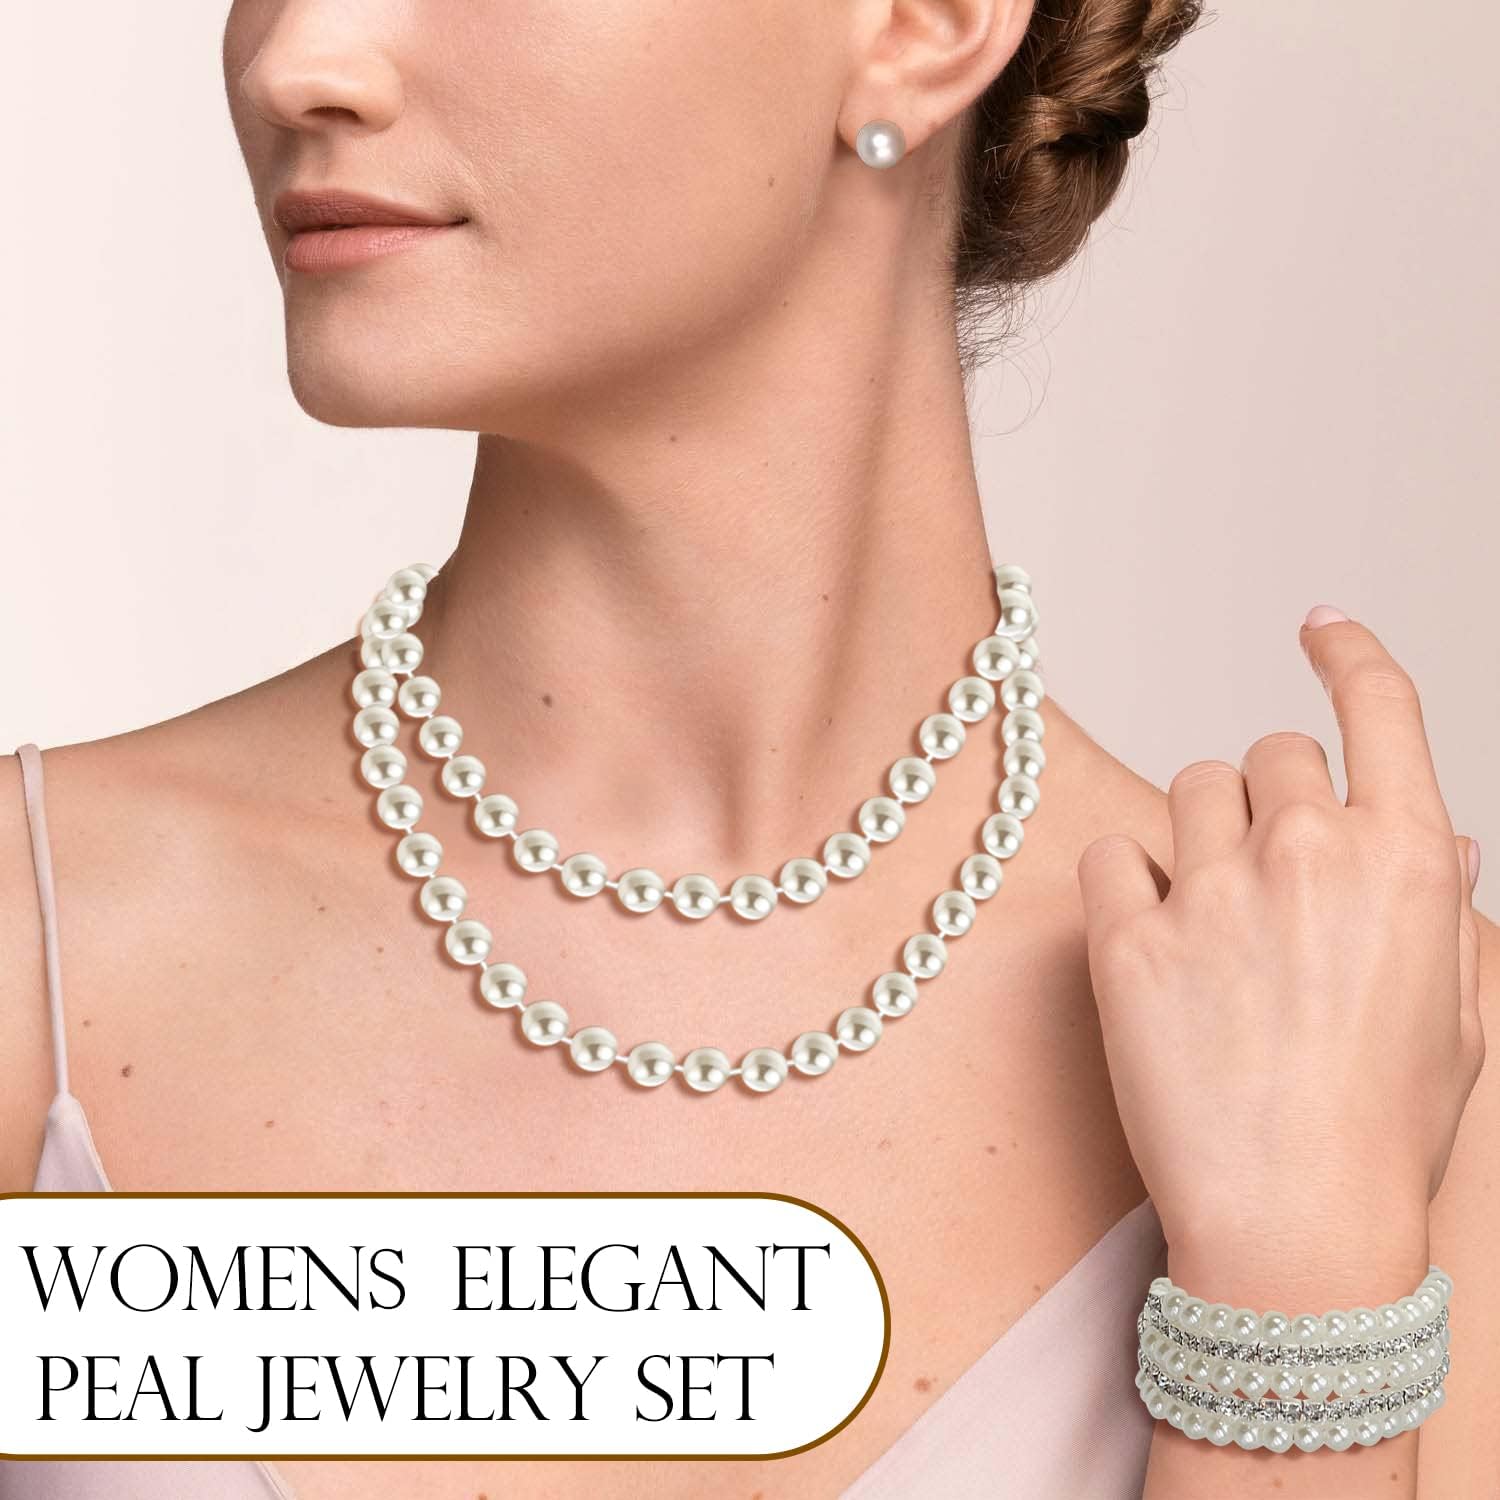 EIELO 16 Pcs Pearl Necklace Earrings Set for Women Girls Simulated Pearl Bracelet Faux Pearl Necklace Dangle Earrings Jewelry Set